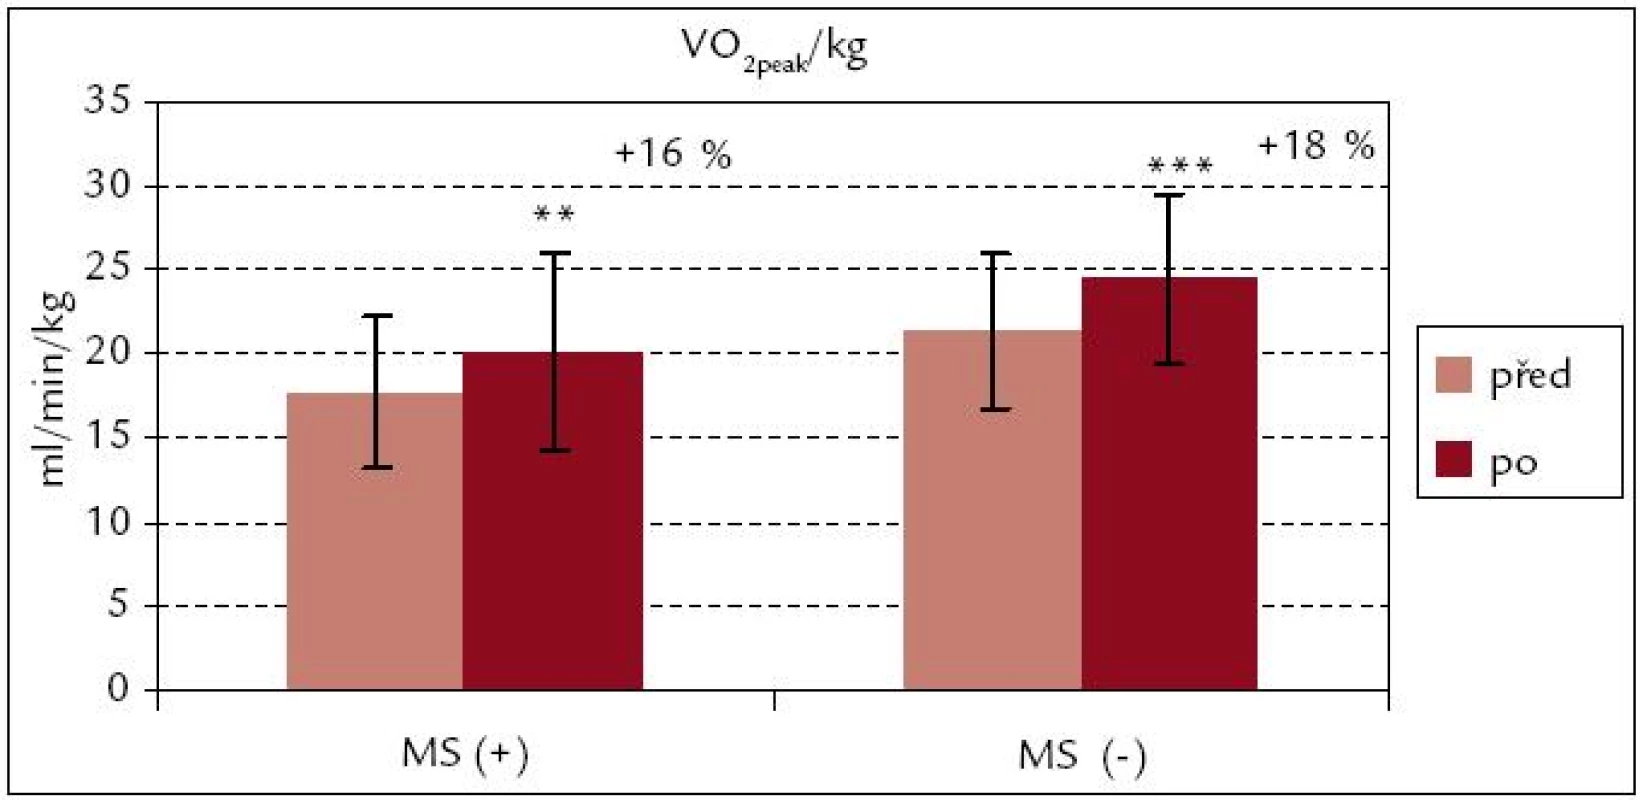 Vrcholová spotřeba kyslíku na 1 kg hmotnosti před rehabilitací a po ní – srovnání souborů MS(+) a MS(–).
*** p &lt; 0,001, ** p &lt; 0,01